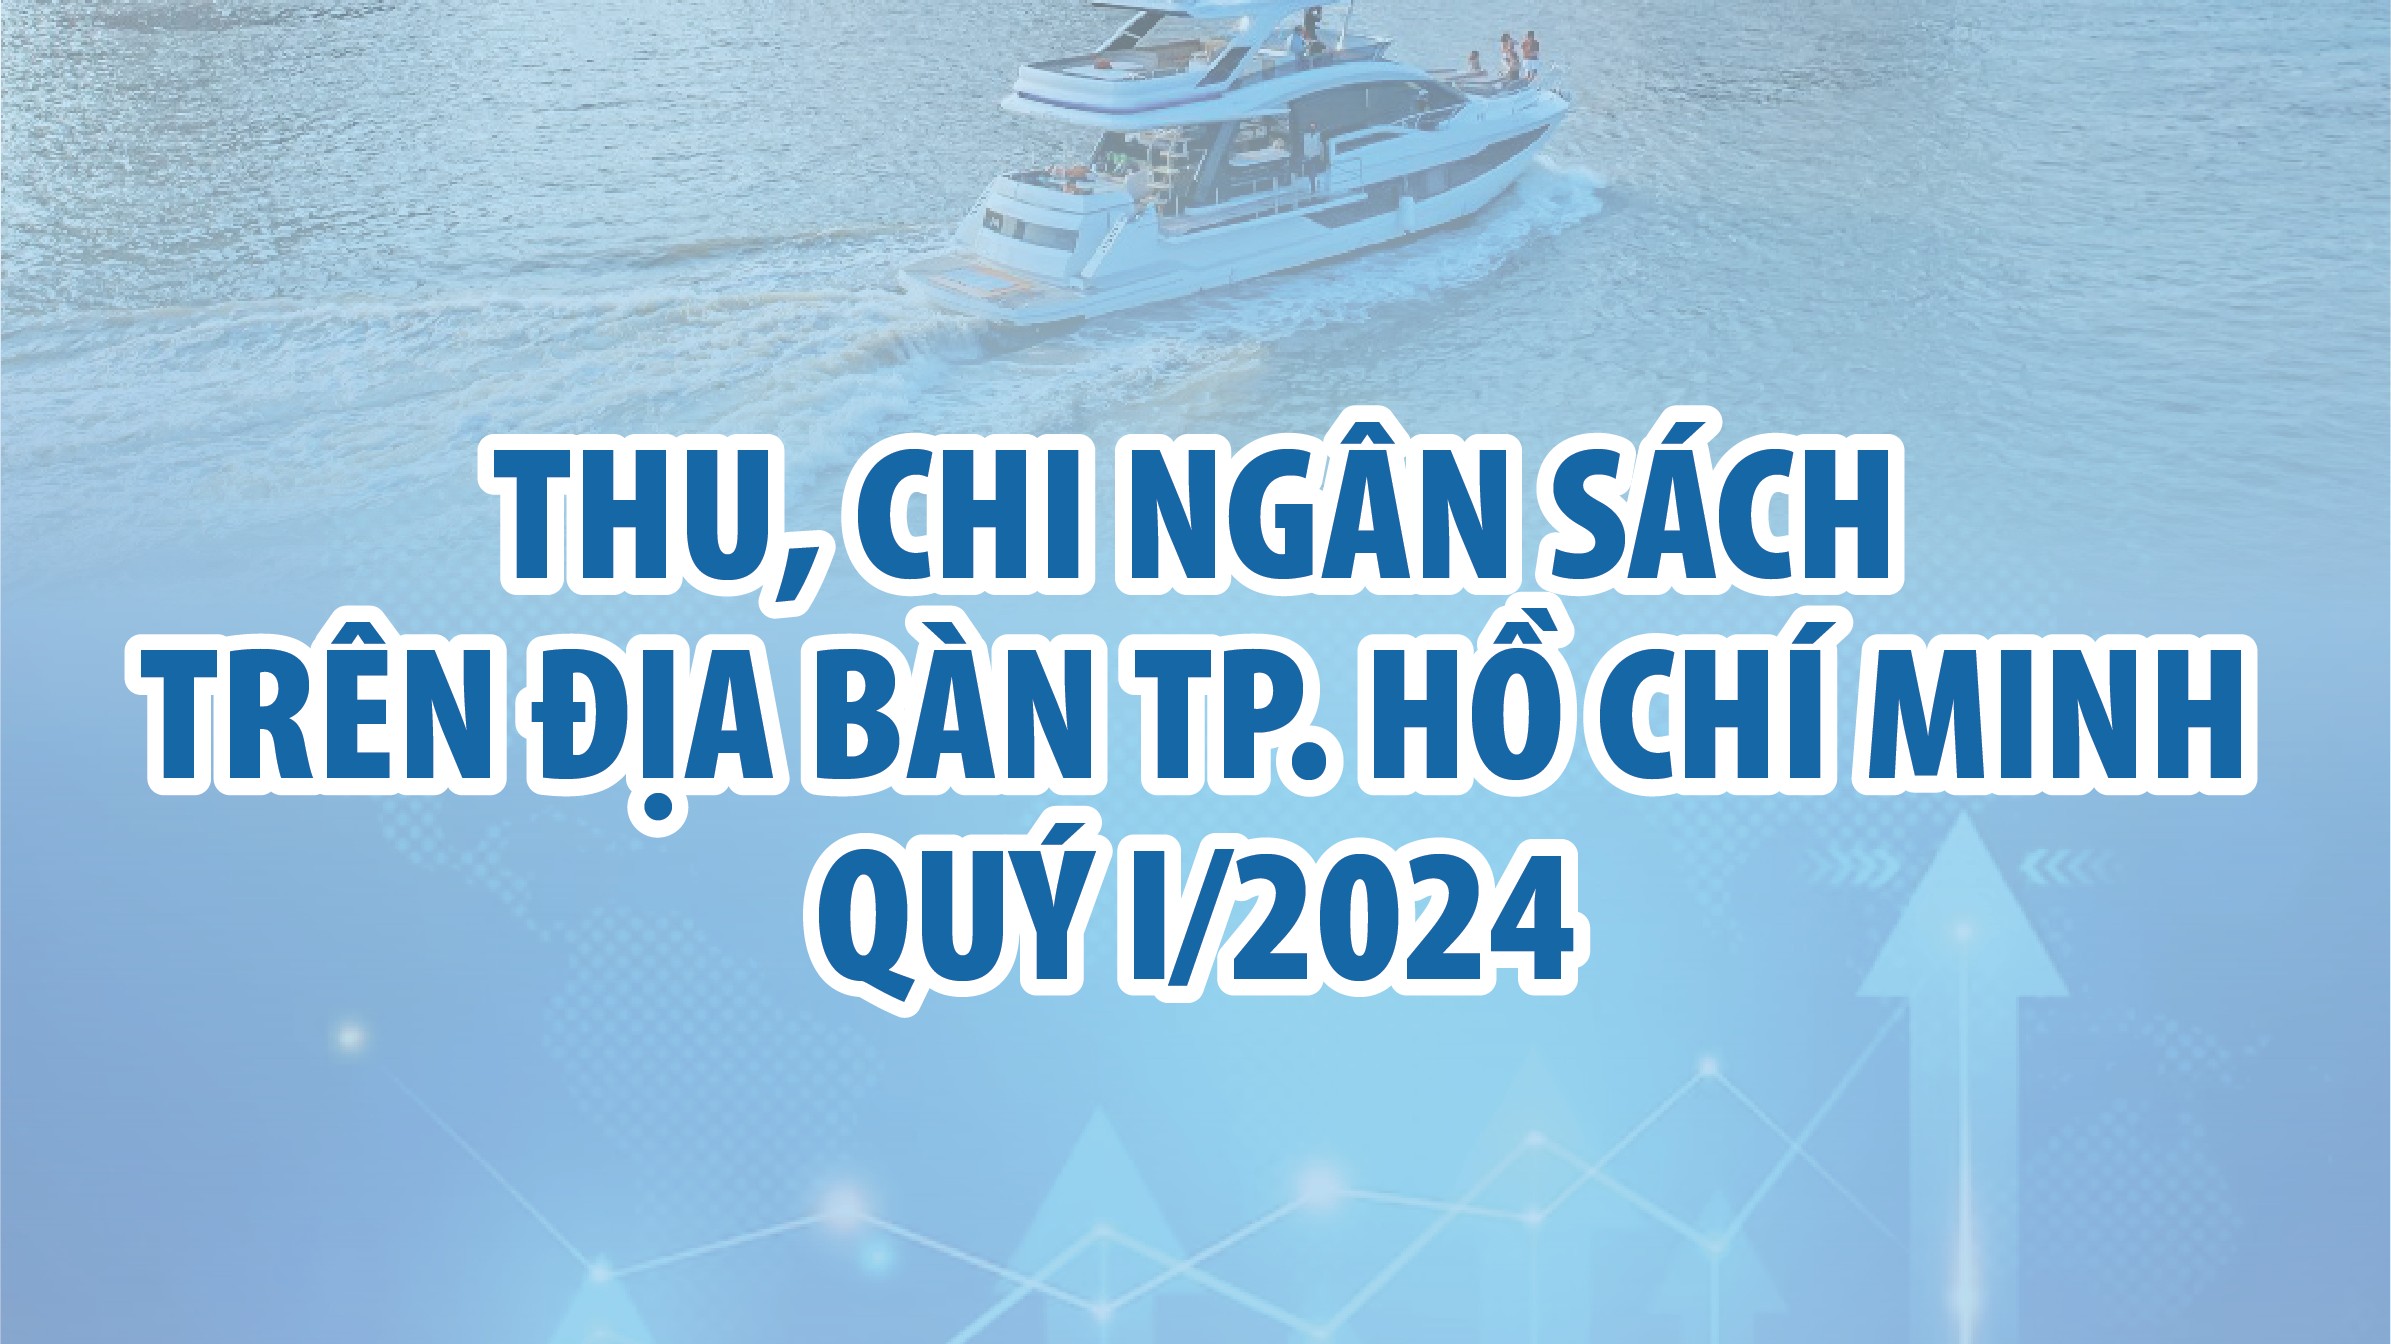 Infographics: Thu, chi ngân sách trên địa bàn TP. Hồ Chí Minh quý I/2024